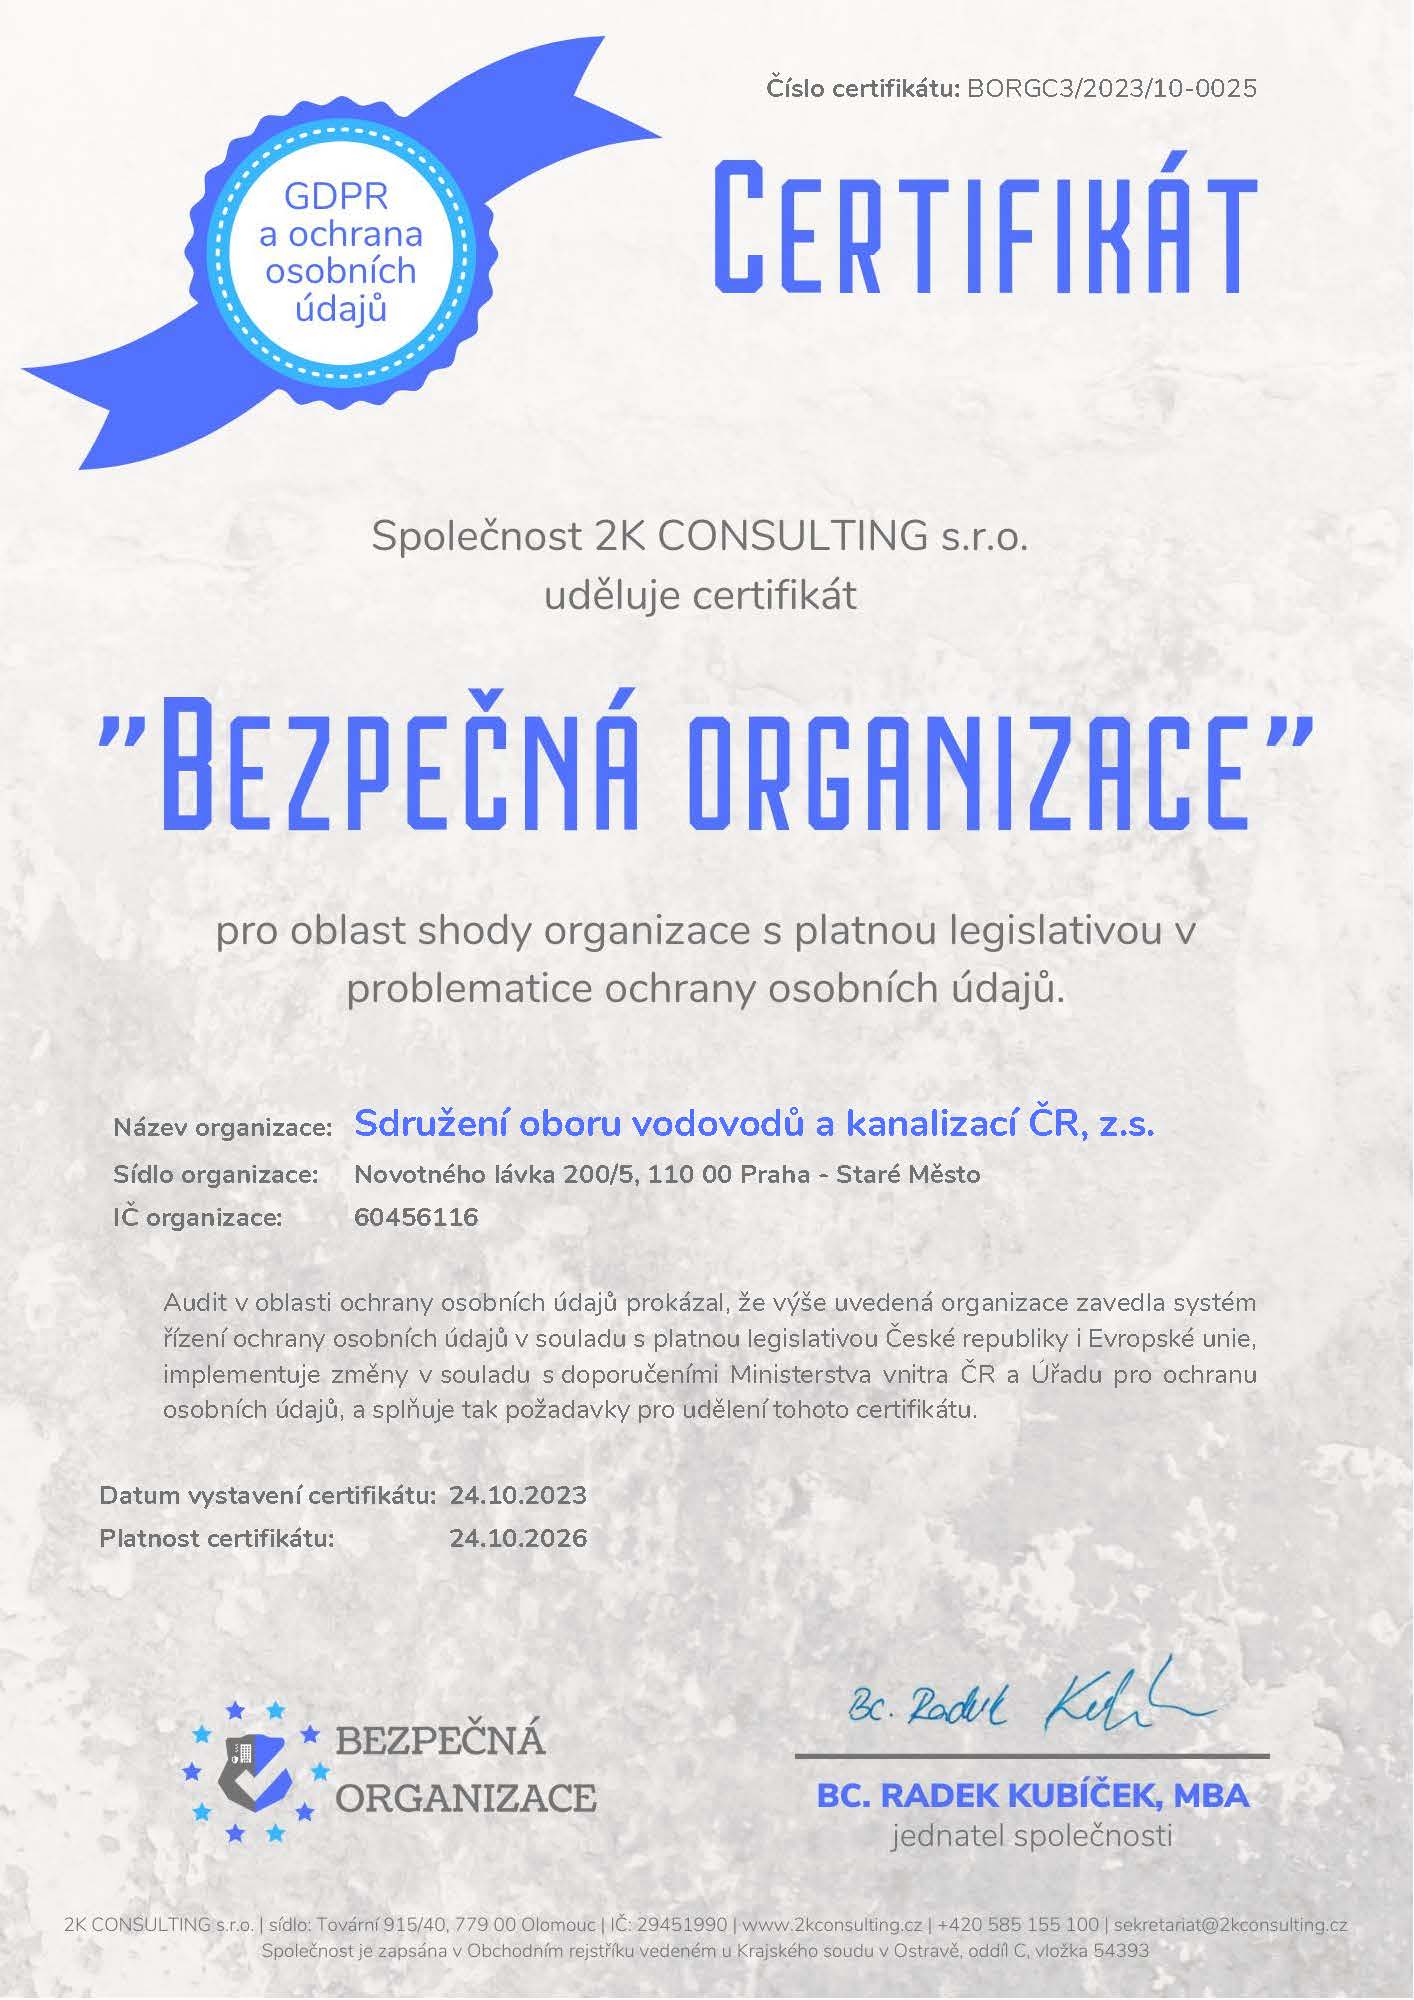 Certifikát Bezpečná organizace udělený SOVAK ČR